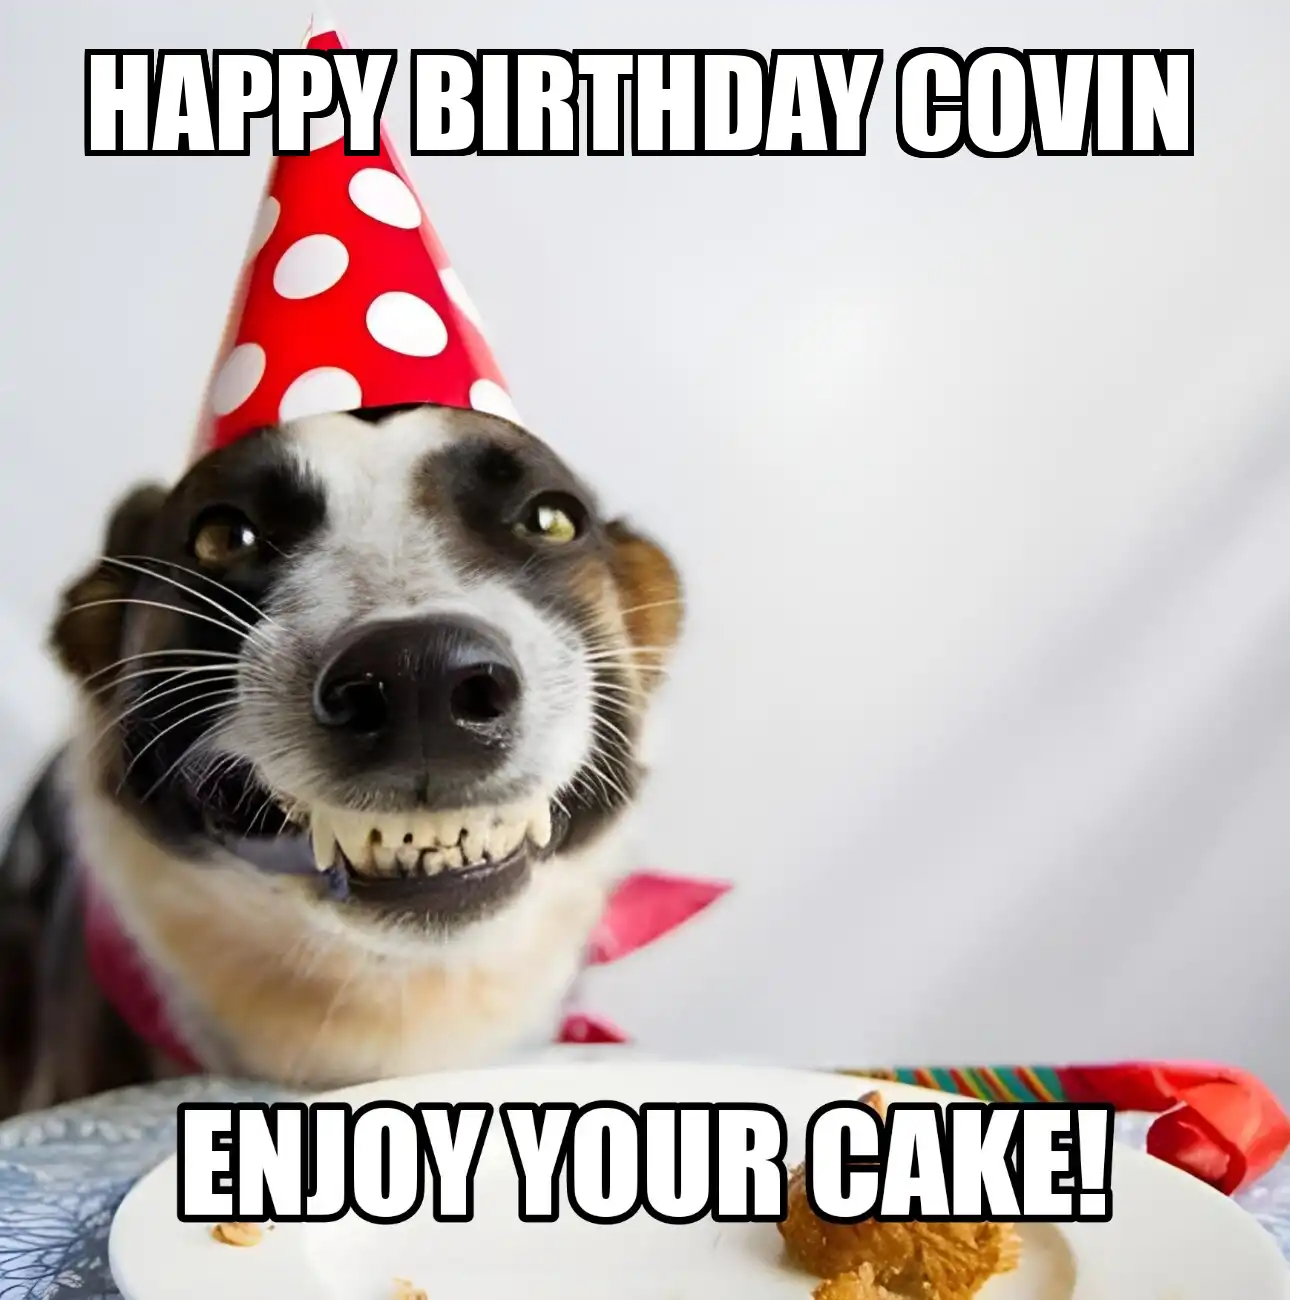 Happy Birthday Covin Enjoy Your Cake Dog Meme